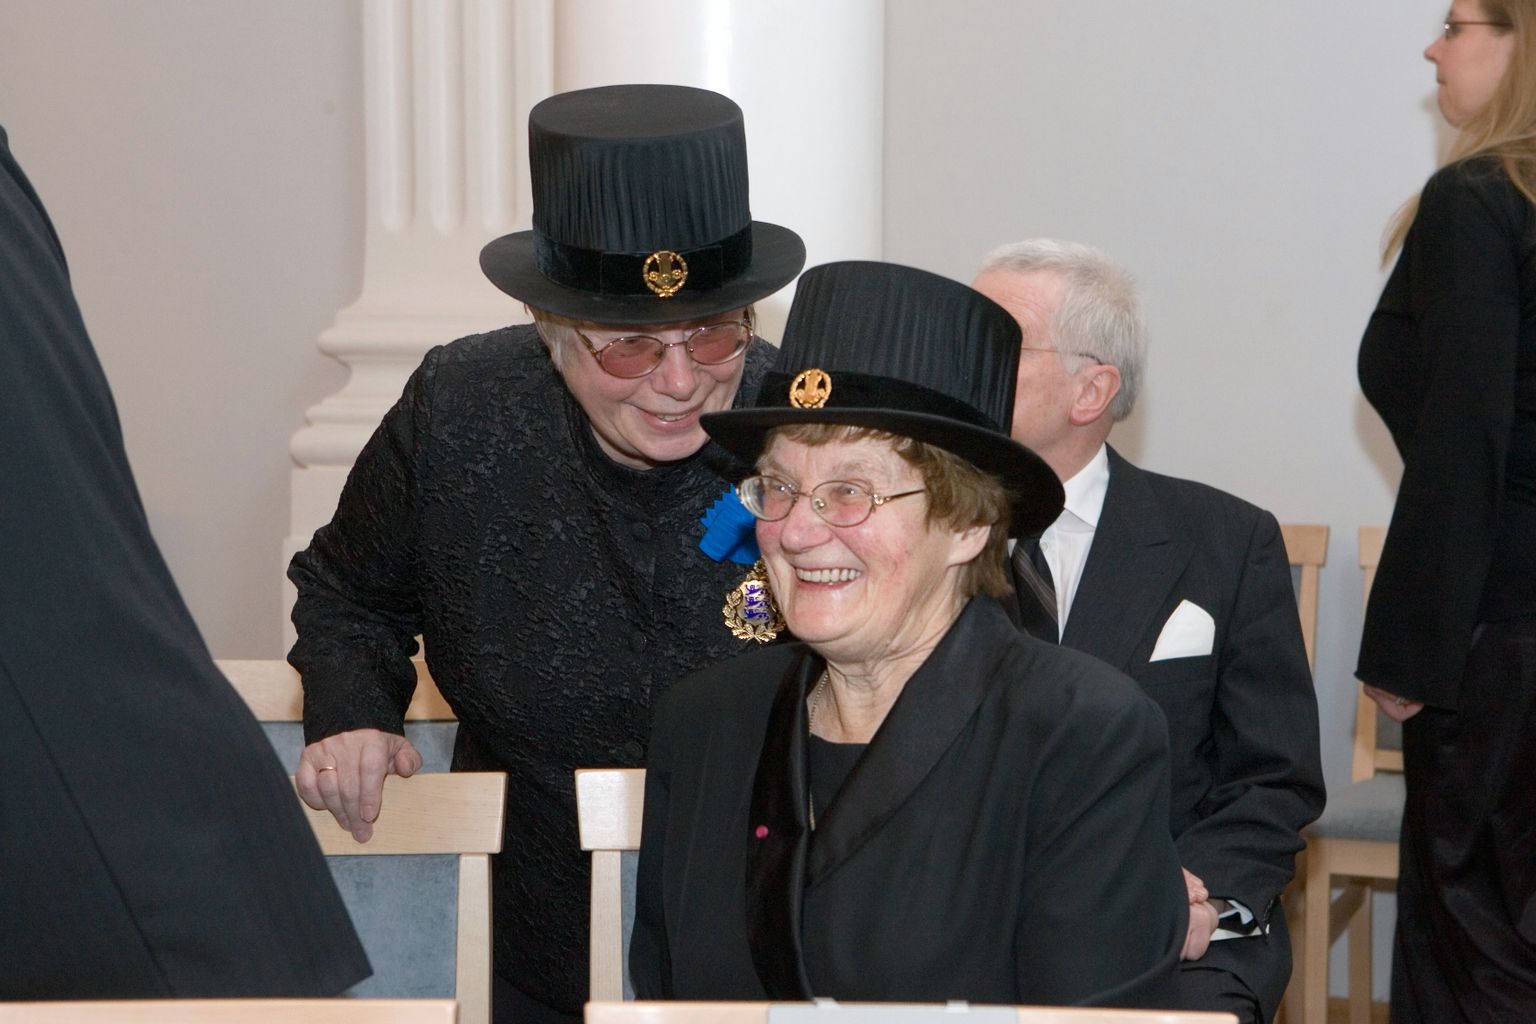 Helsingi Ülikooli audoktori tunneb ära iseloomuliku torukübara järgi. Tartu Ülikooli emeriitprofessorid Ene-Margit Tiit (paremal) ja Marju Lauristin emakeelse ülikooli 87. aastapäeva tähistamisel.